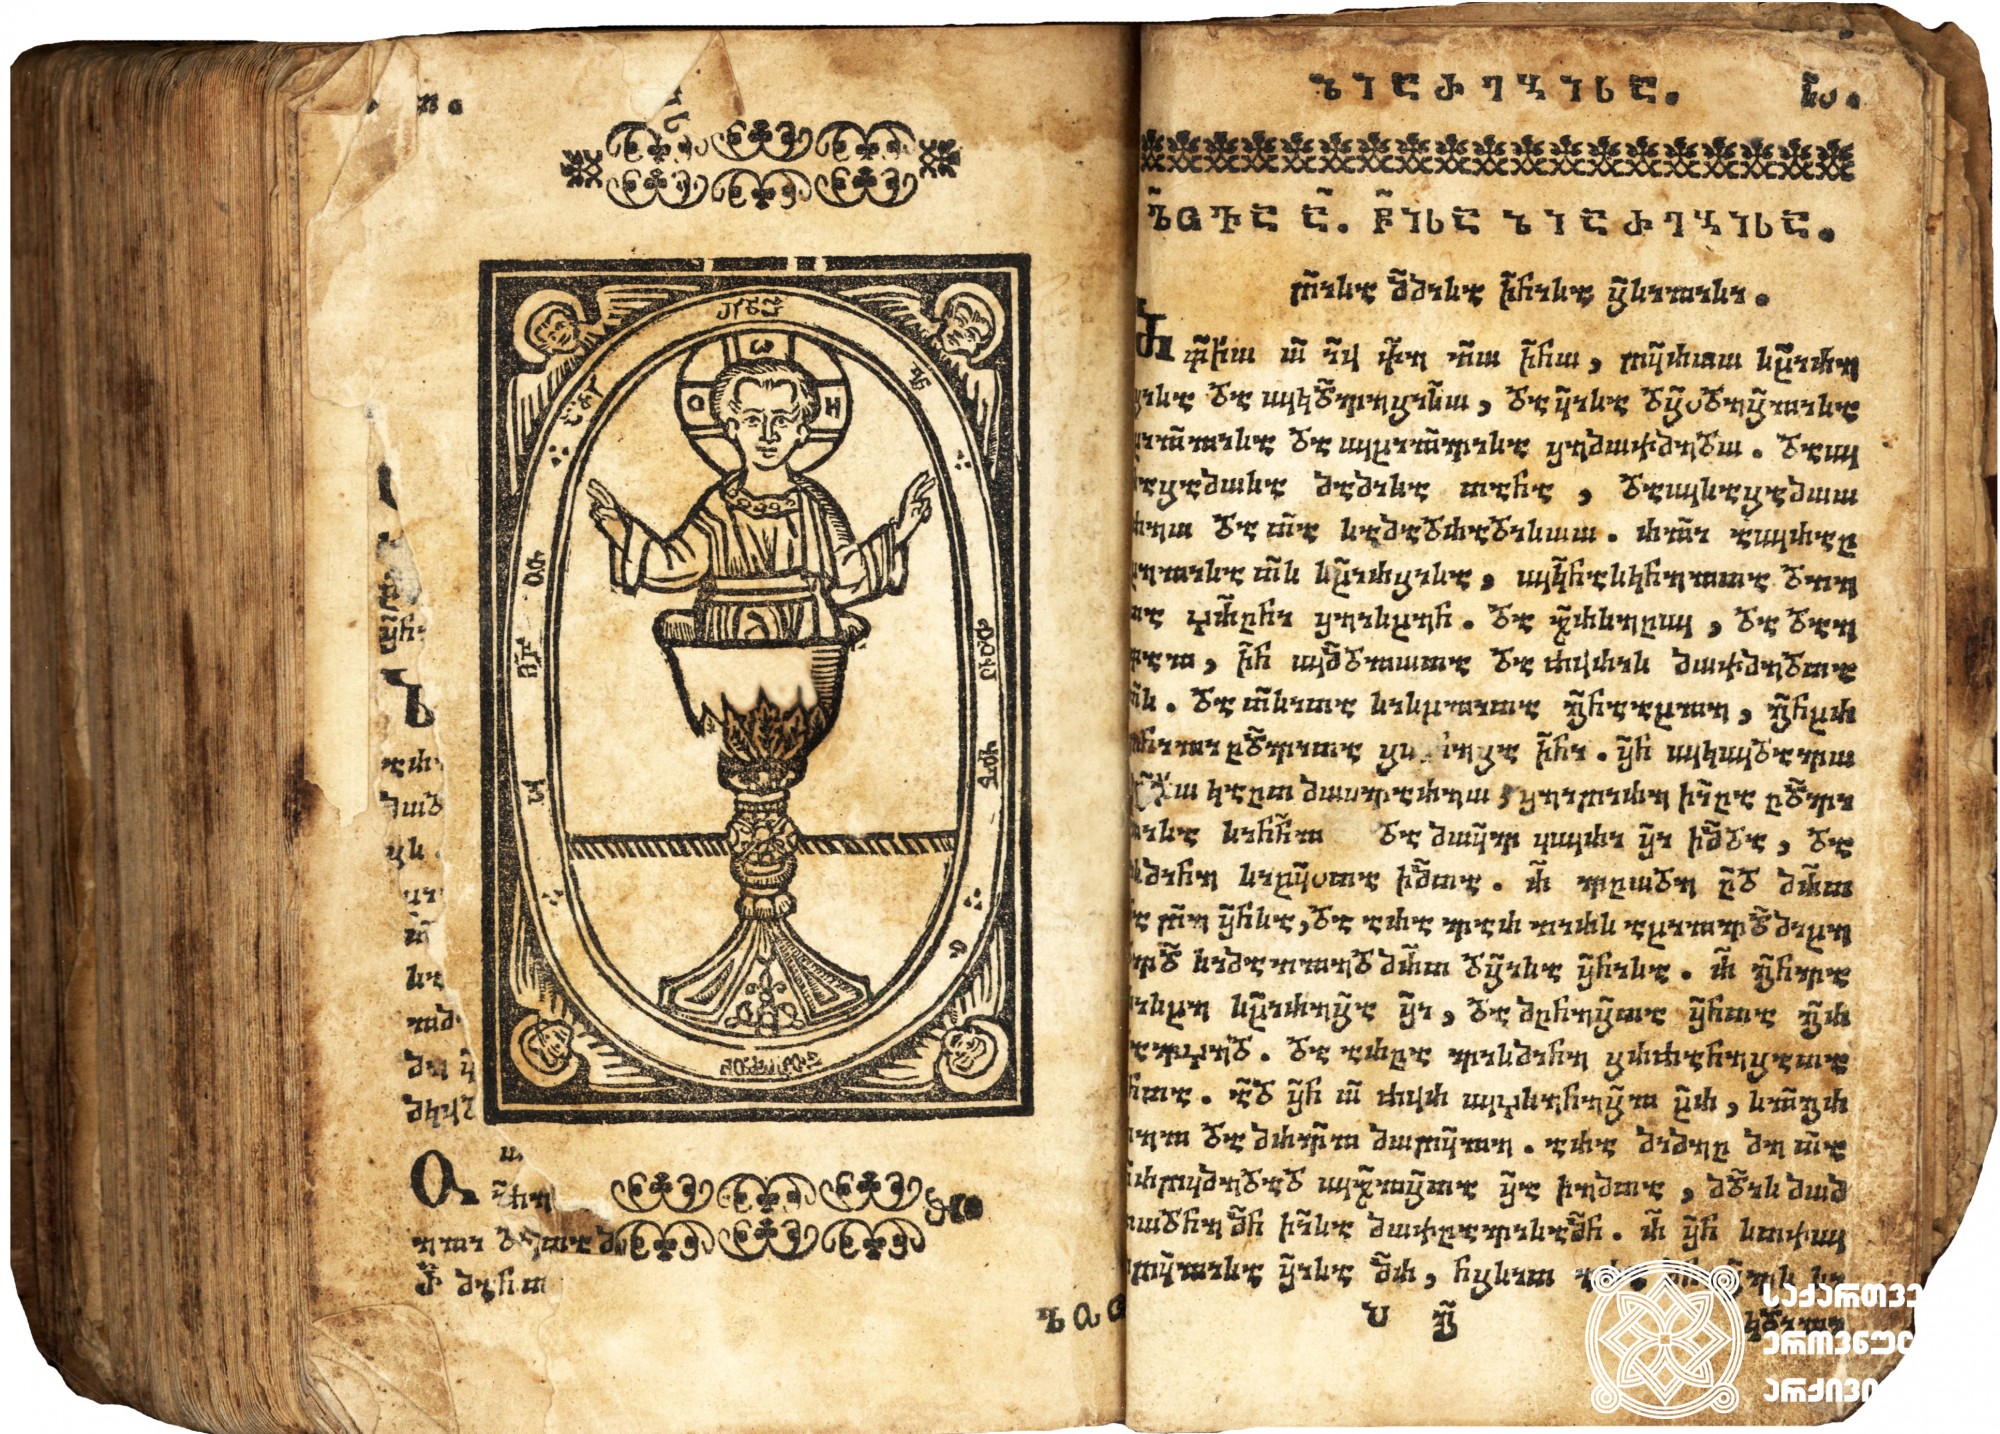 ლოცვანი <br>
ტფილისი, 1784 <br>
ერეკლე II-ის სტამბა
მომგებელი: ქრისტეფორე კეჟერაშვილი

Prayer Book <br>
Tfilisi, 1784 <br>
Printing house of Erekle II. Customer: Kristephore Kezherashvili